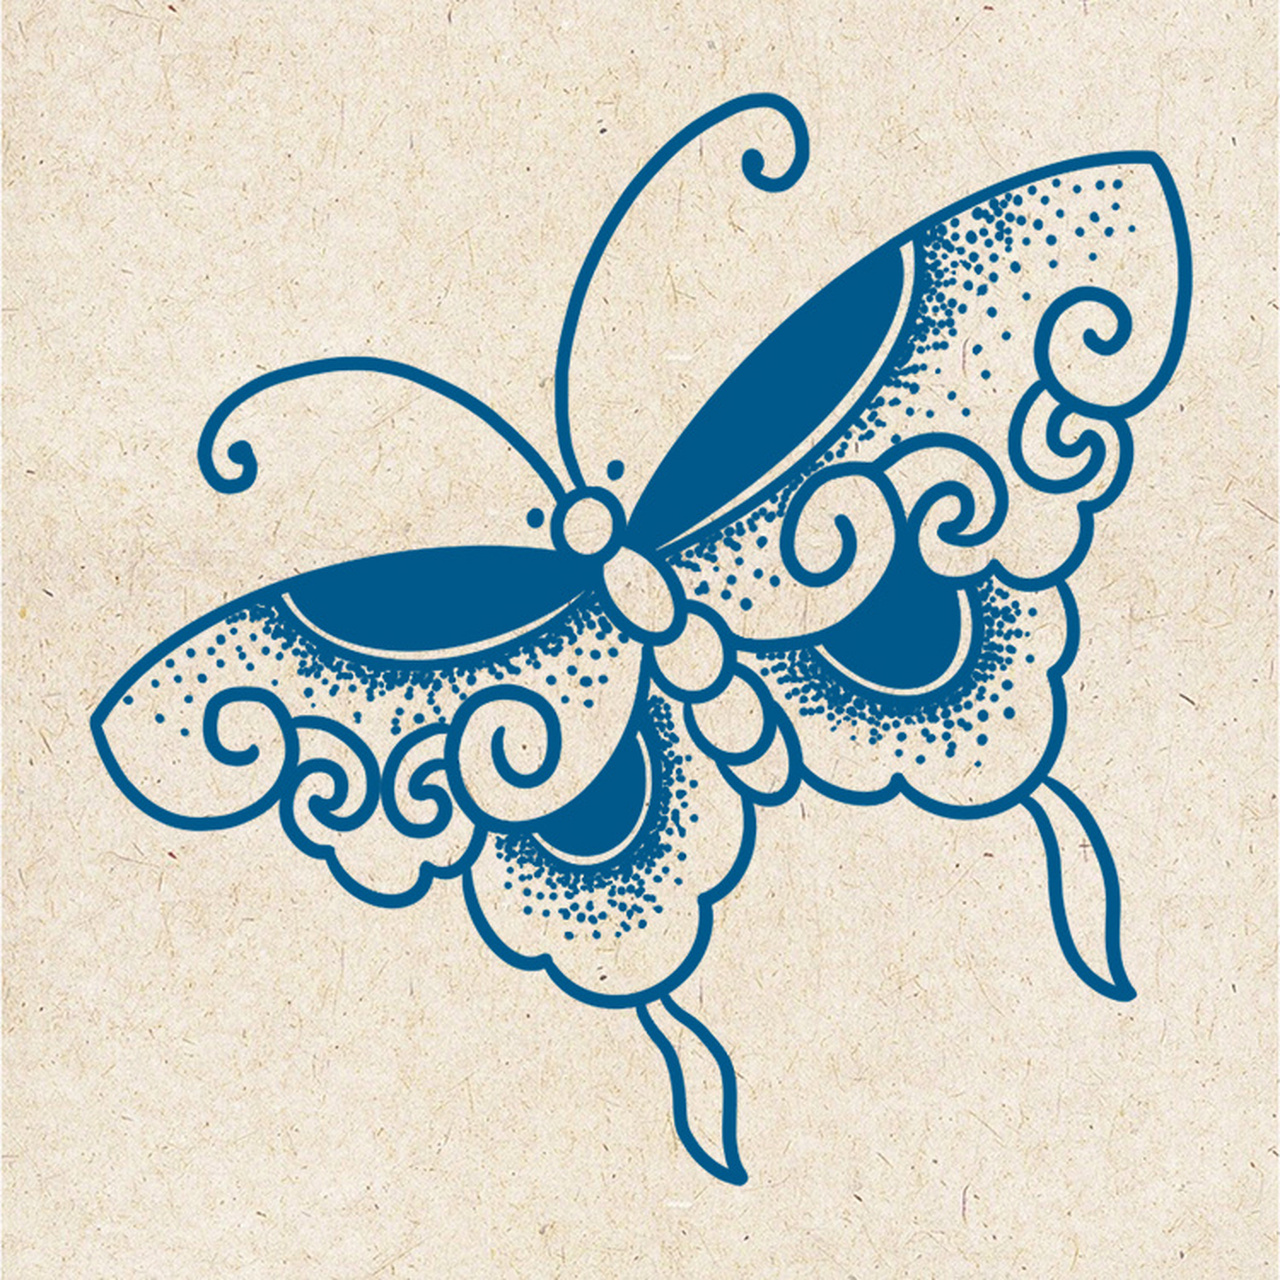 中国传统纹样蝴蝶纹图片